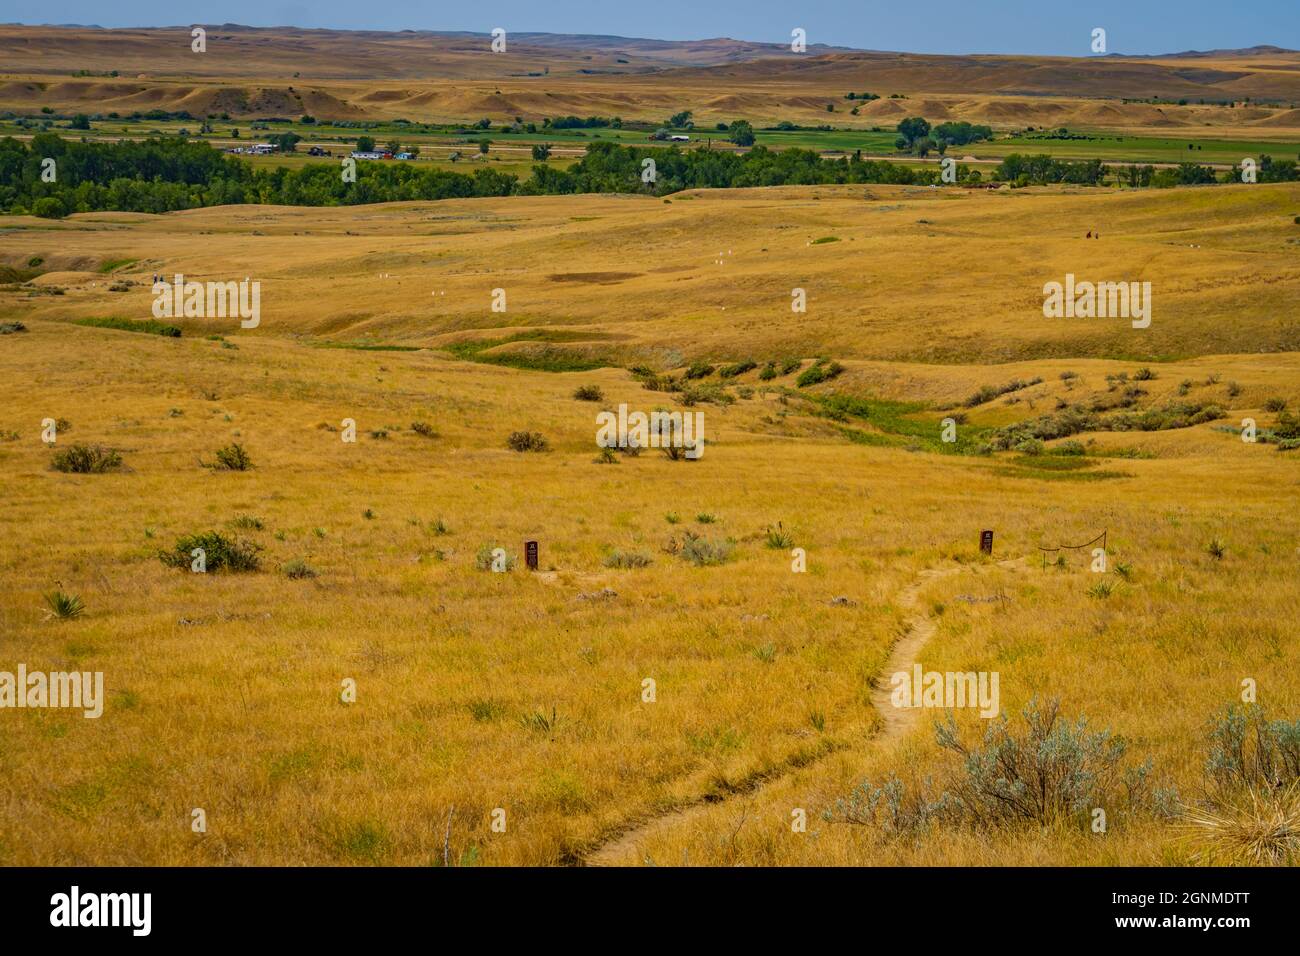 Die Schlacht am Little Bighorn, auch bekannt als Wounded Knee, wurde entlang der Klippen und Schluchten des Little Bighorn River Valley in Montana ausgetragen Stockfoto